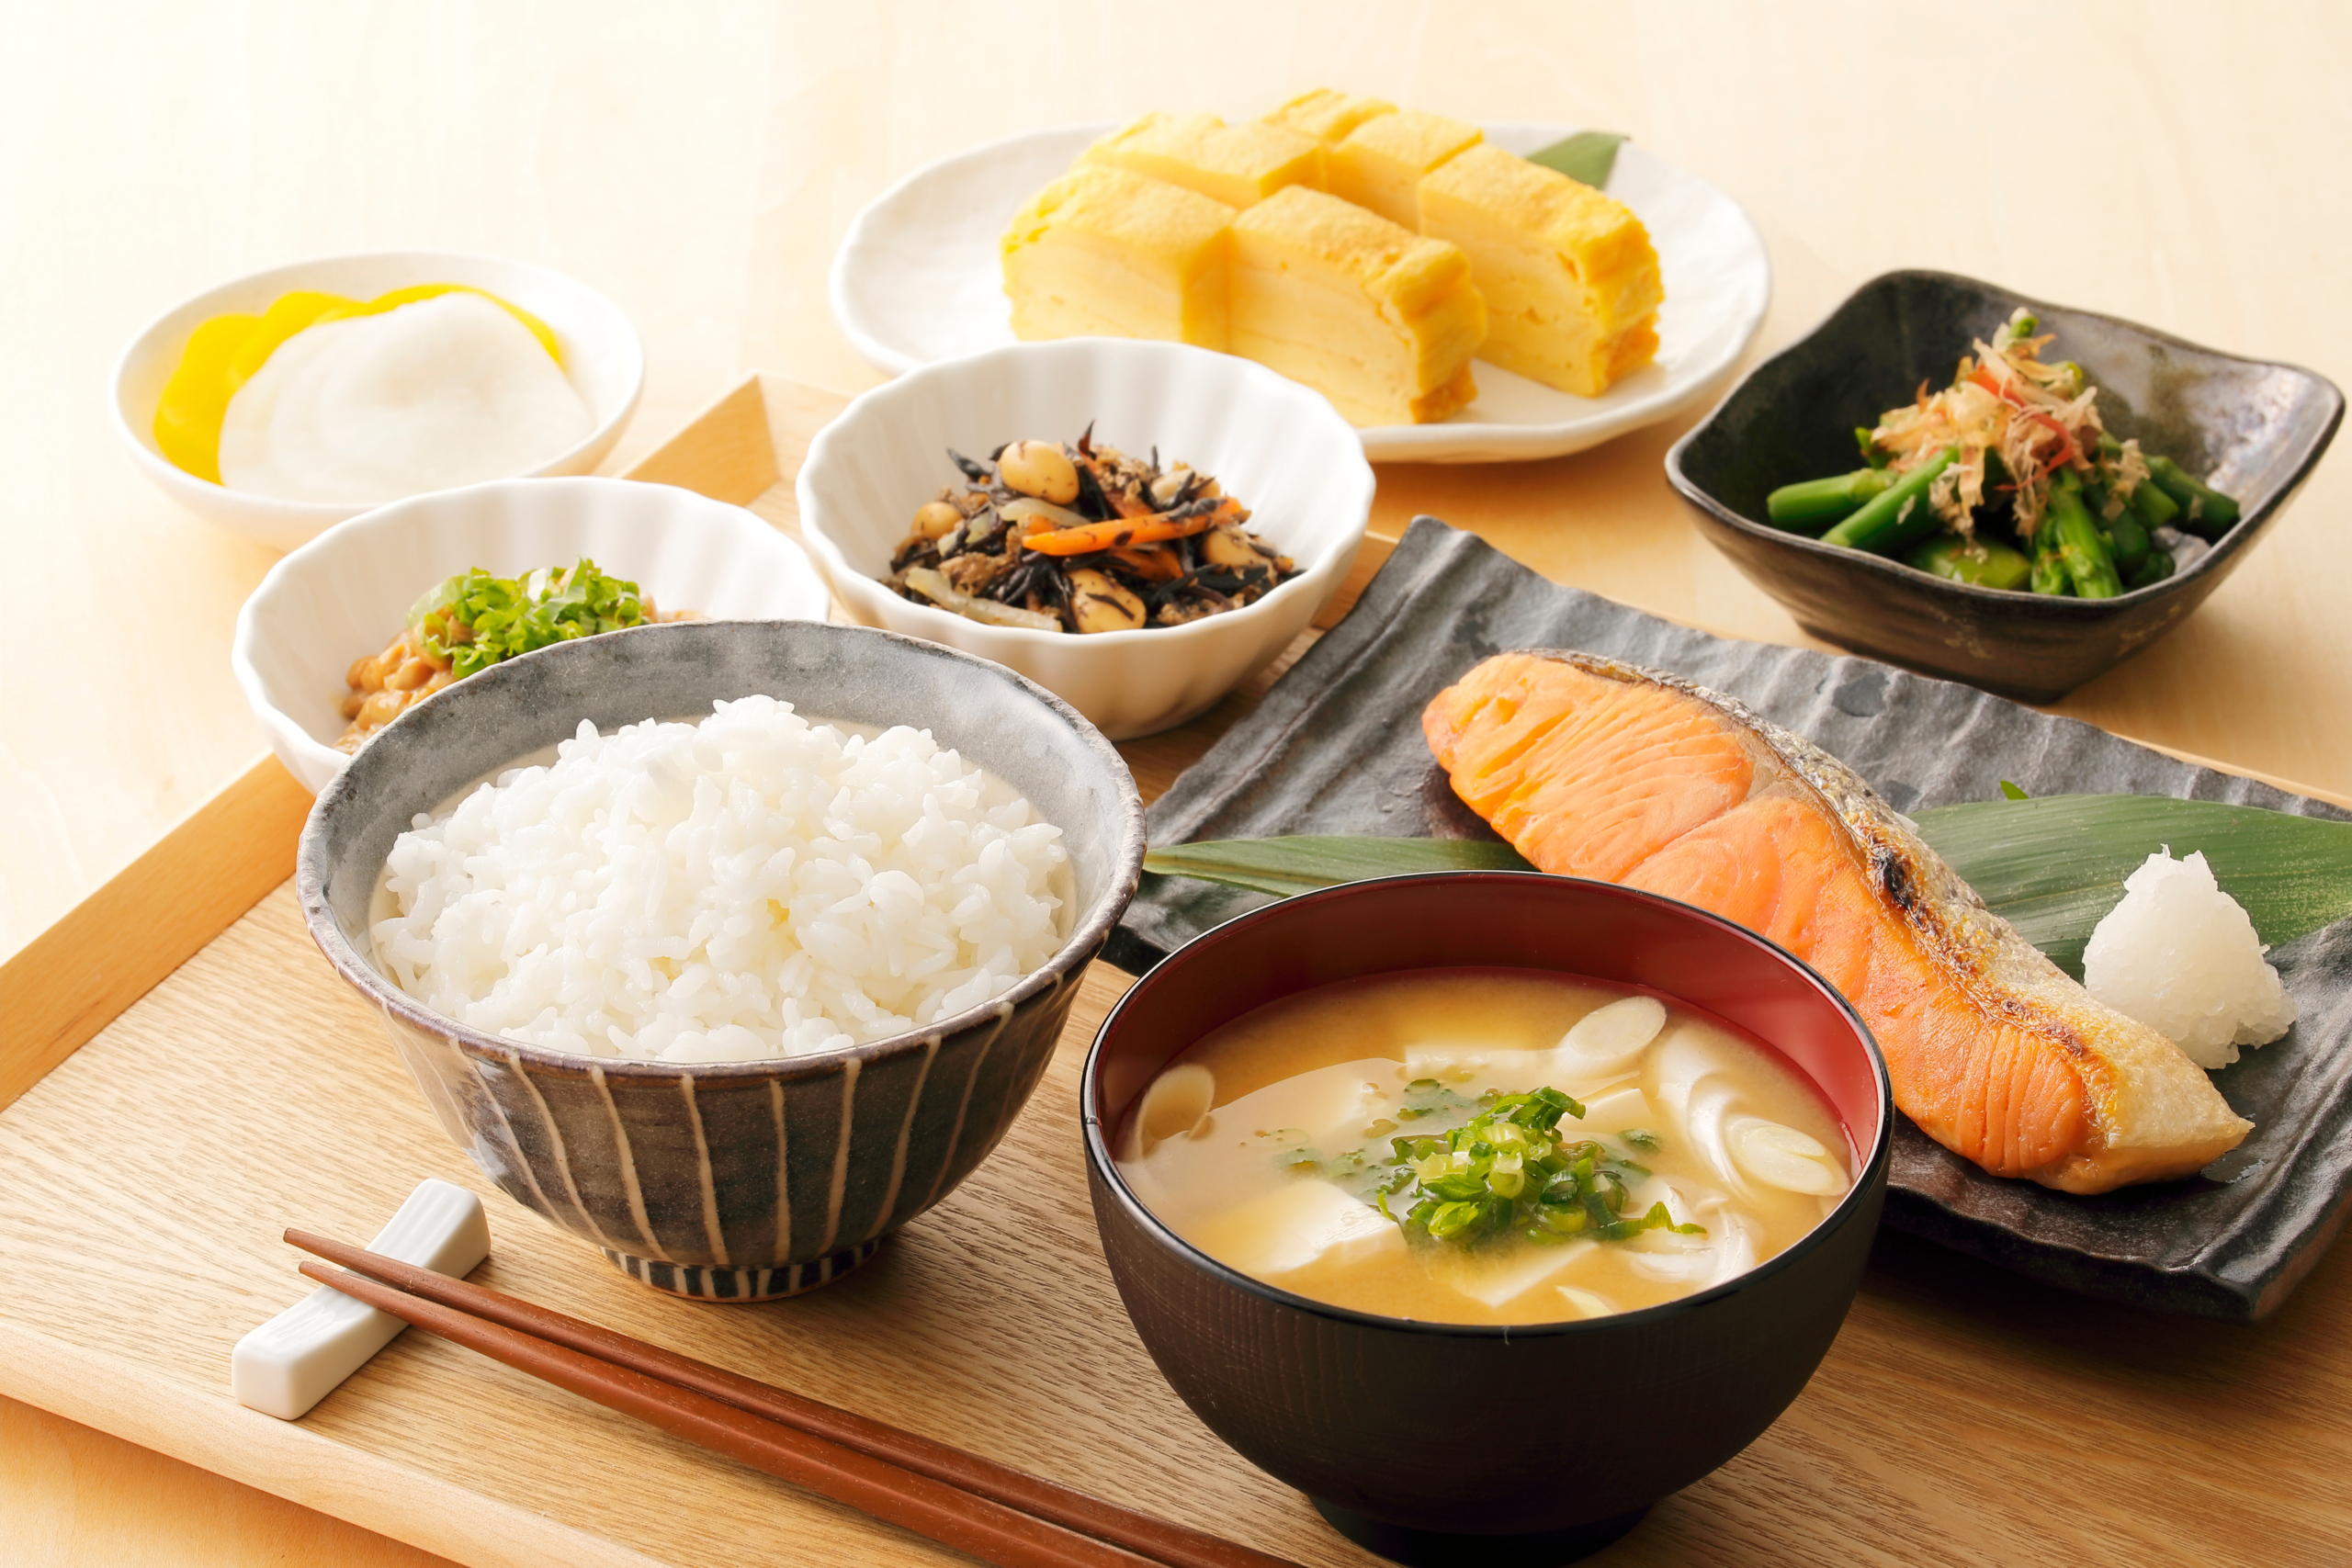 Hình ảnh bữa sáng của người Nhật. (Ảnh: Shutterstock)